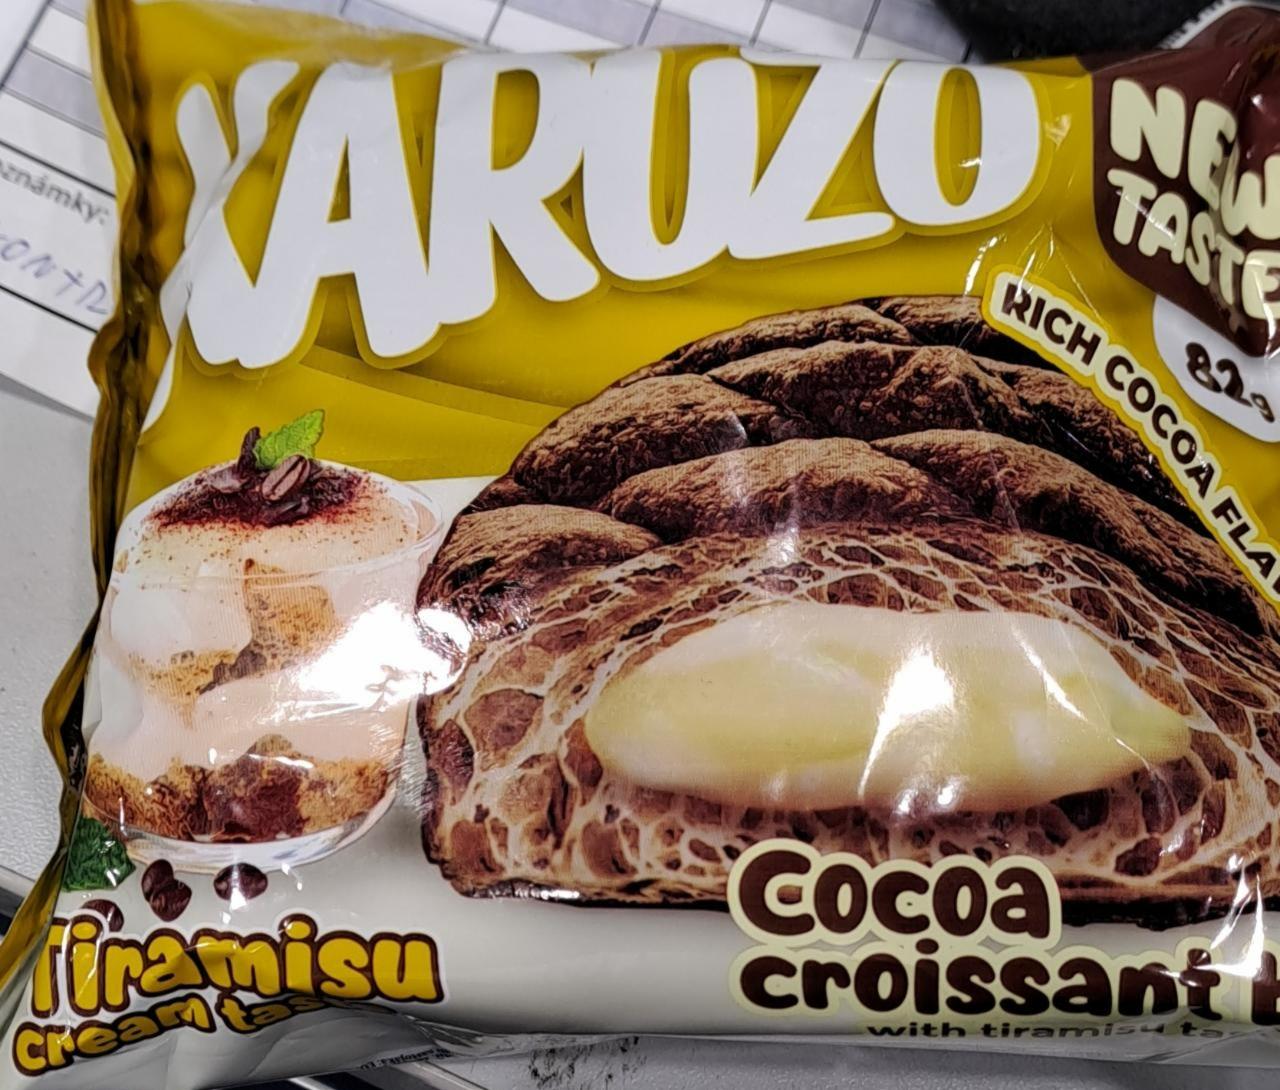 Fotografie - Cocoa Croissant Tiramisu cream Karuzo